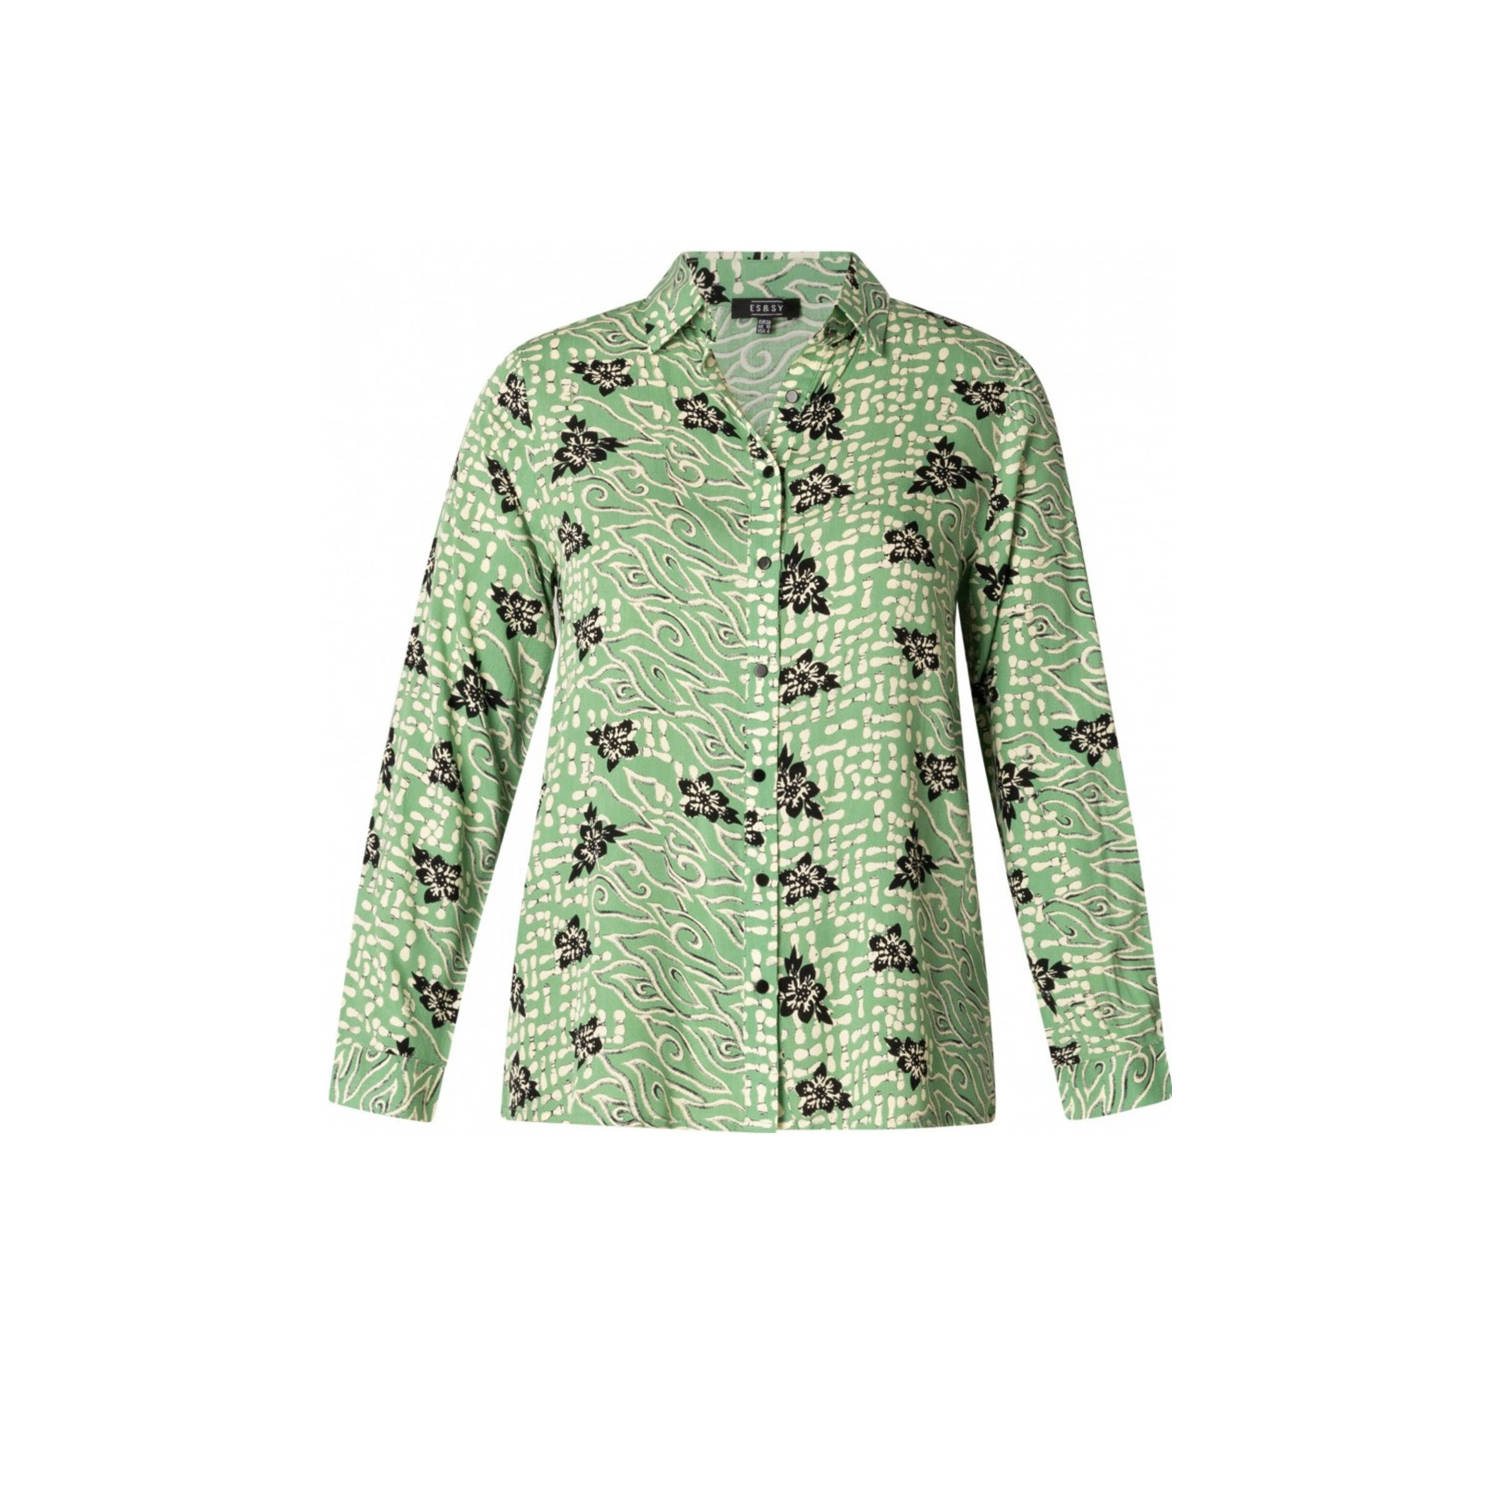 ES&SY blouse met all over print groen multi